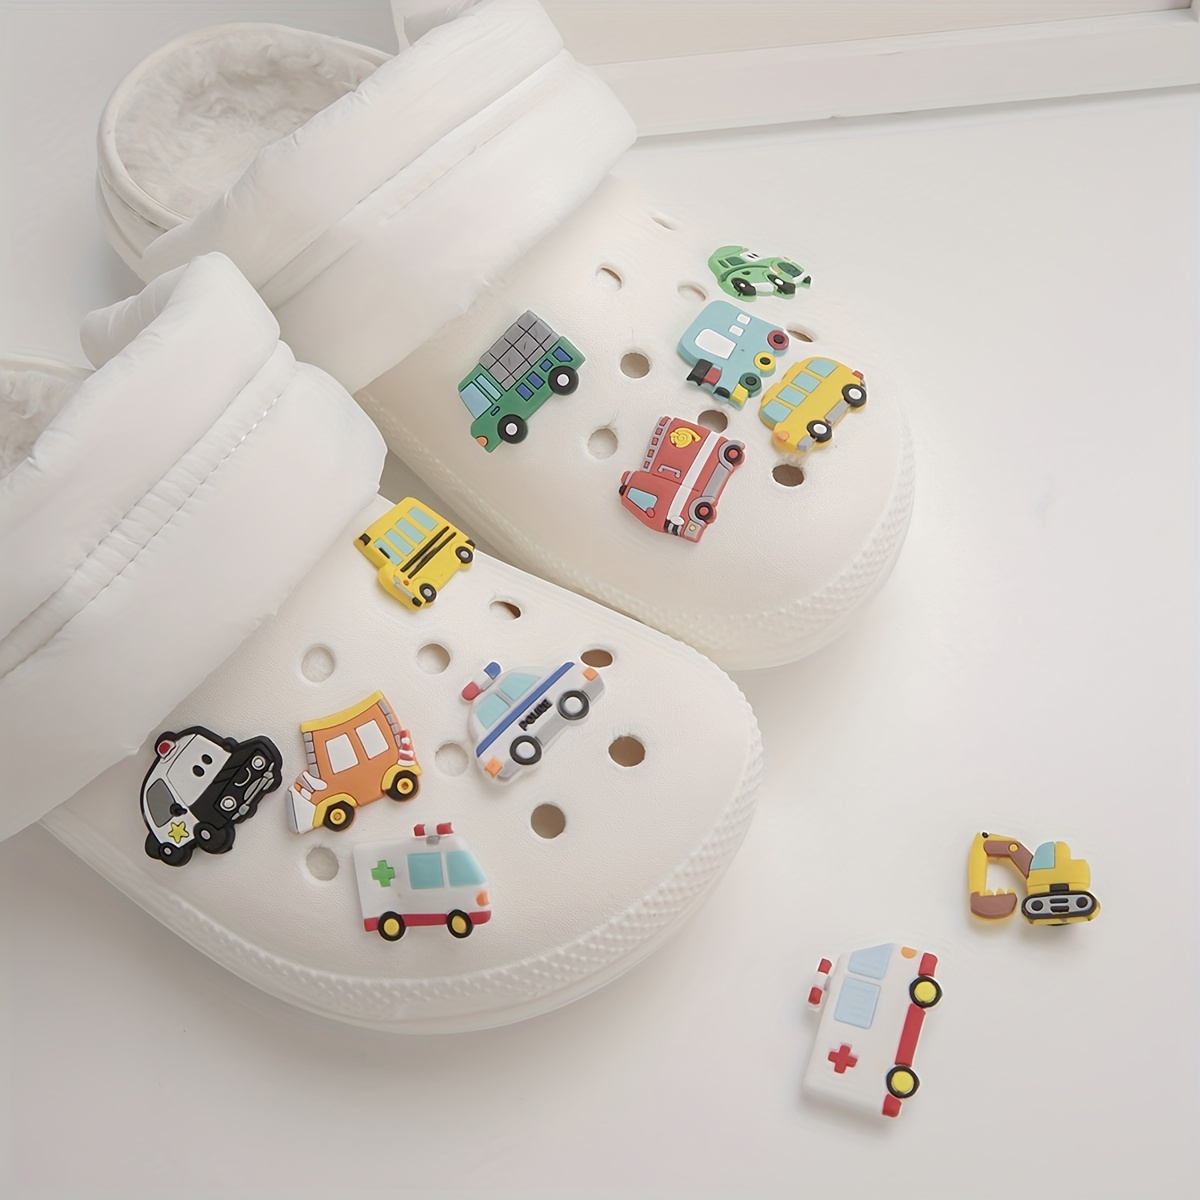 20pcs Cars Theme Shoe Charms Cartoon Shoes Decoration For Kids Boys Girls  Diy Croc Clog Sandals Bracelet Decor Accessories Party Favors